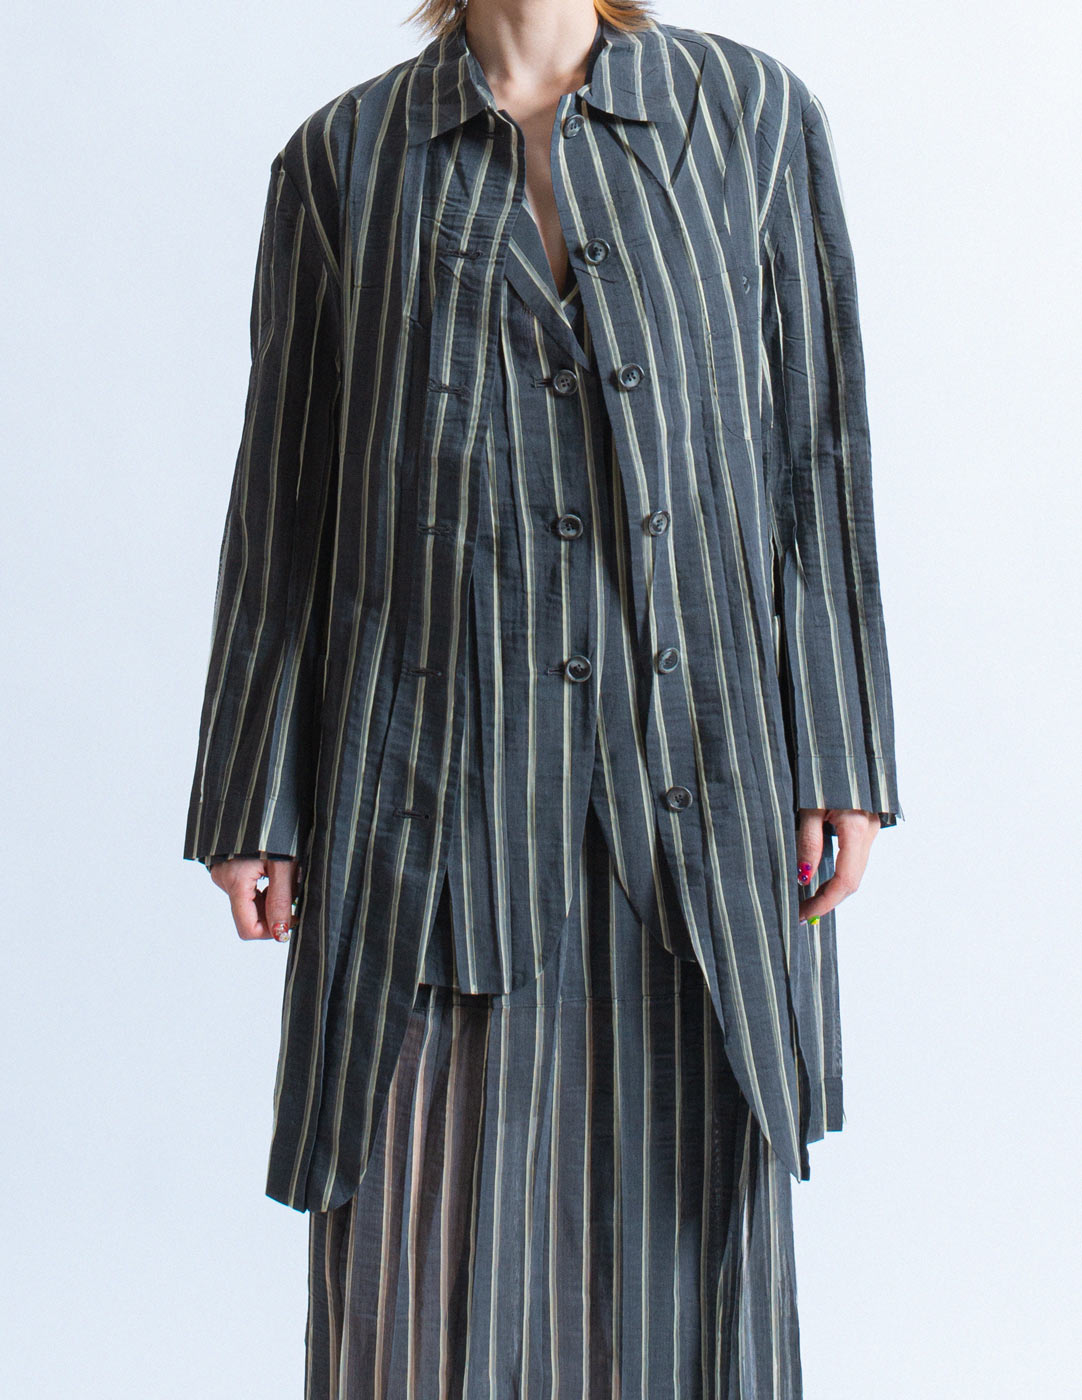 Issey Miyake vintage sheer striped shirt jacket front detail